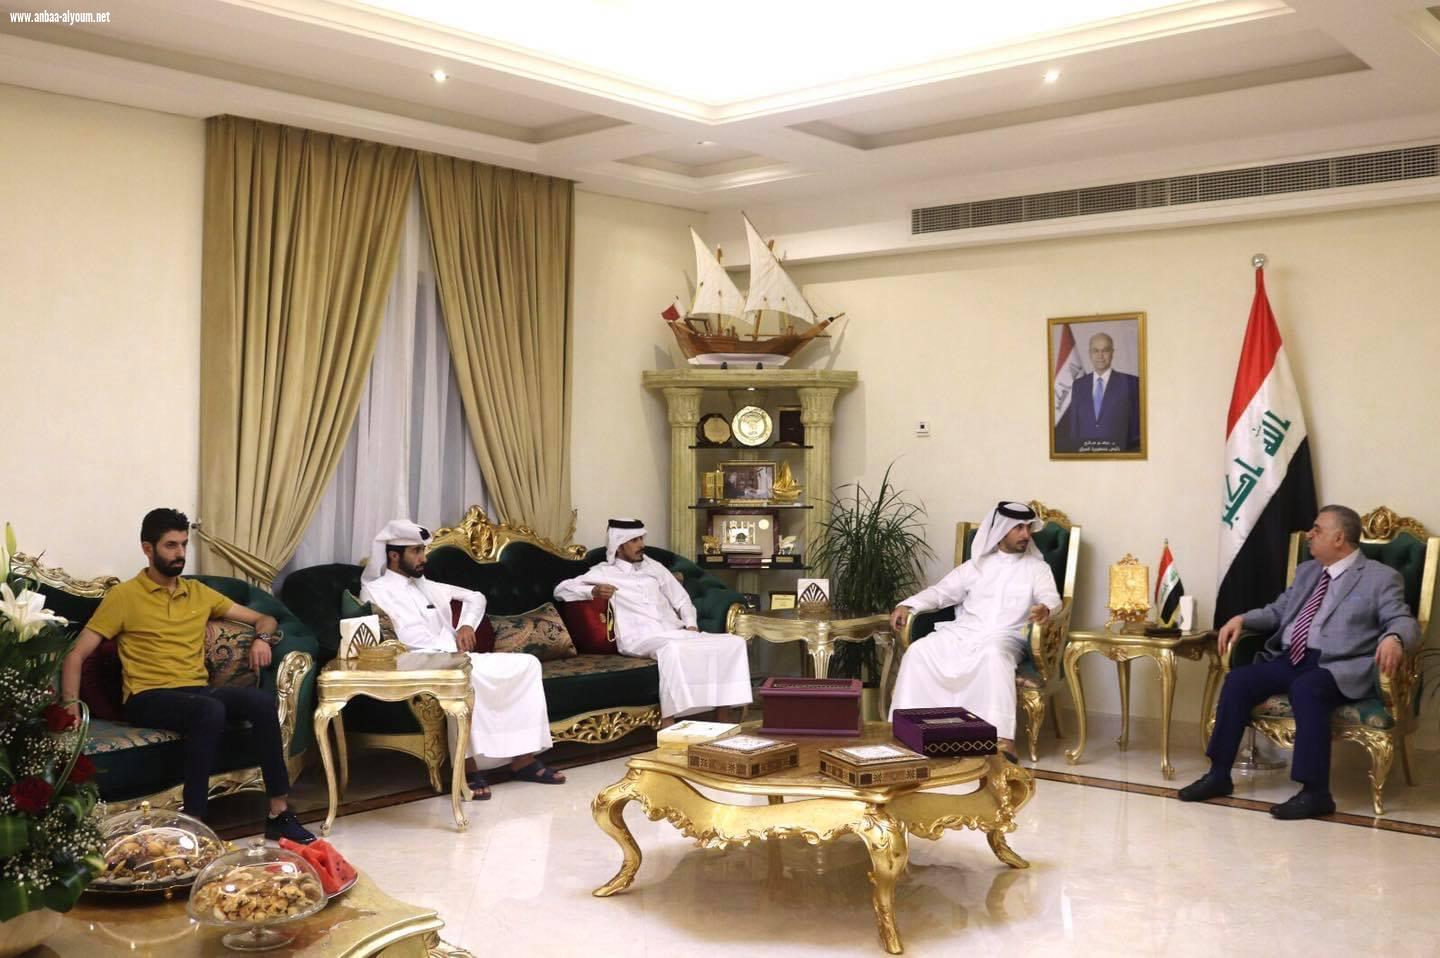 السفير عمر البرزنجي يقيم دعوة عشاء لمجموعة ضيوف من العراقيين والقطريين